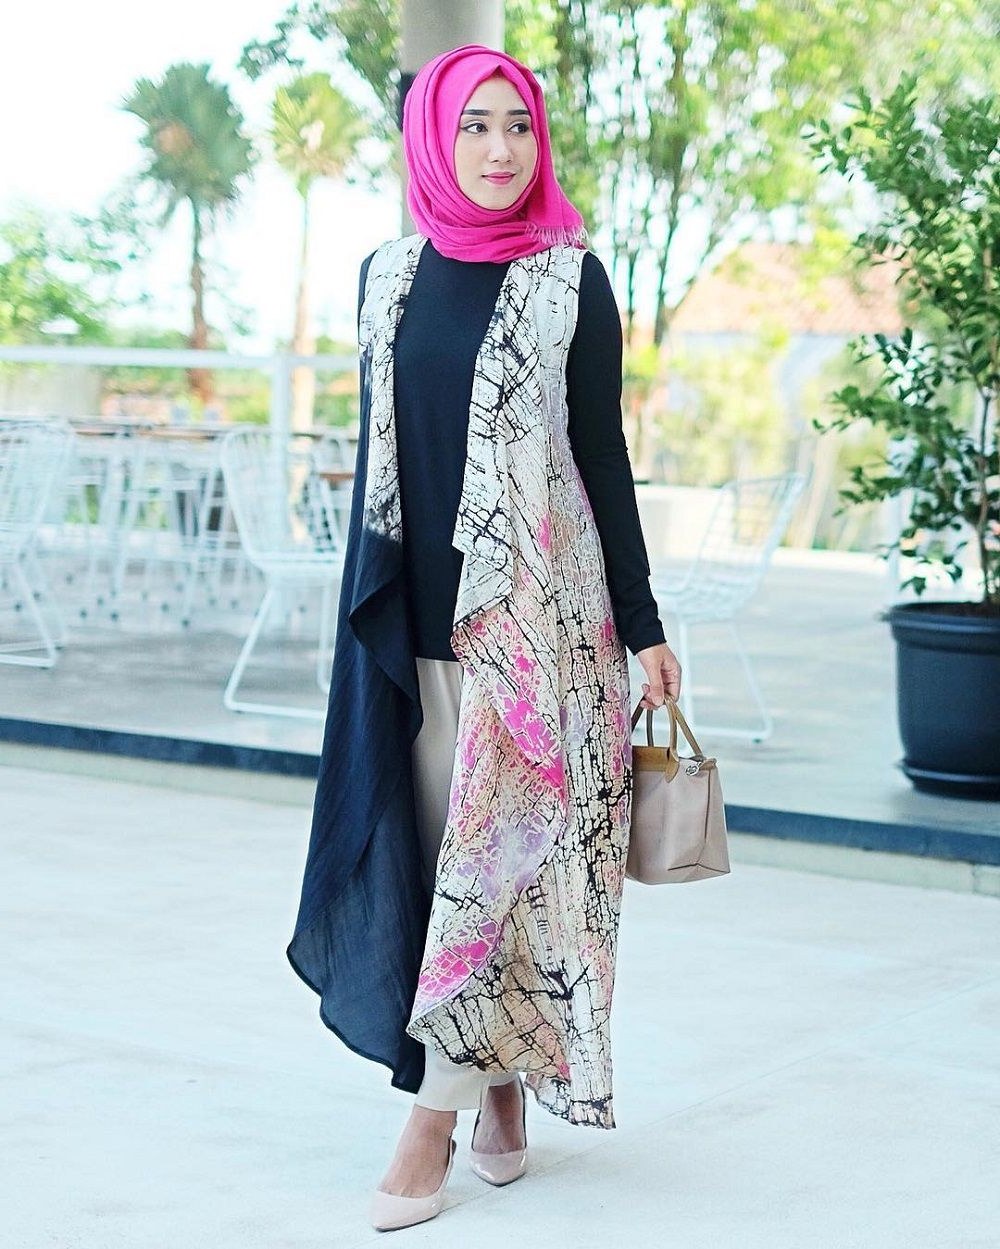 Model Model Baju Lebaran Dian Pelangi 2019 87dx Baju Muslim Dian Pelangi Di 2019